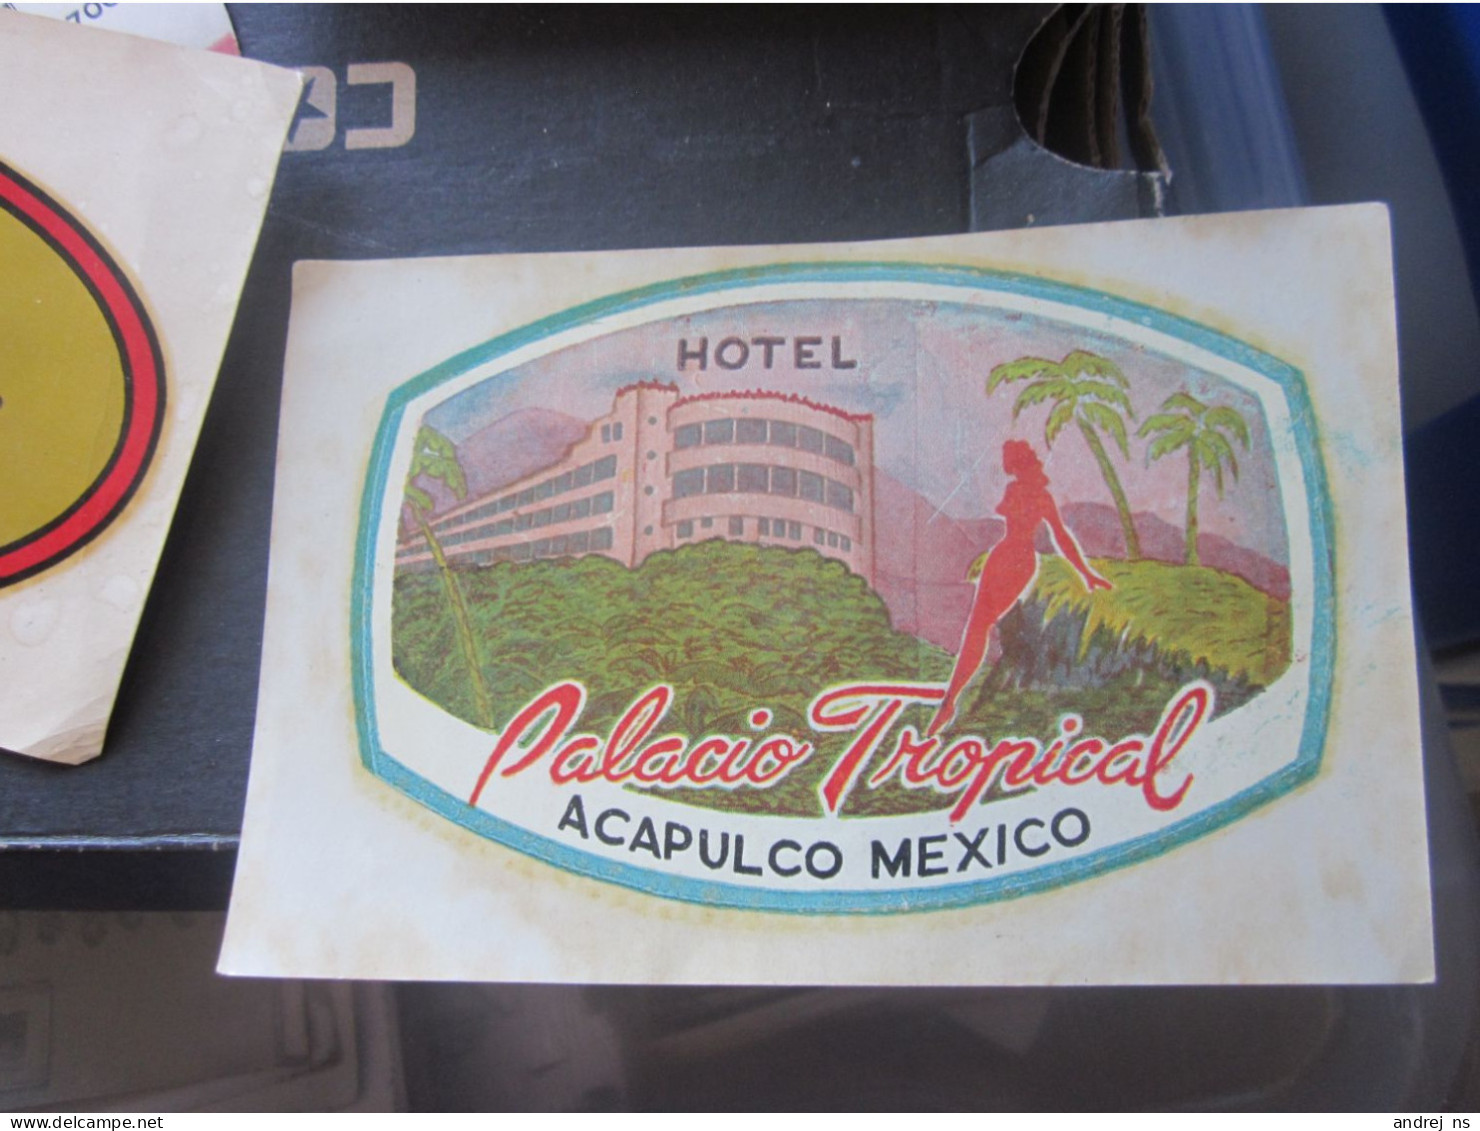 Hotel Palacio Tropical Acapulco Mexico - Hotel Labels